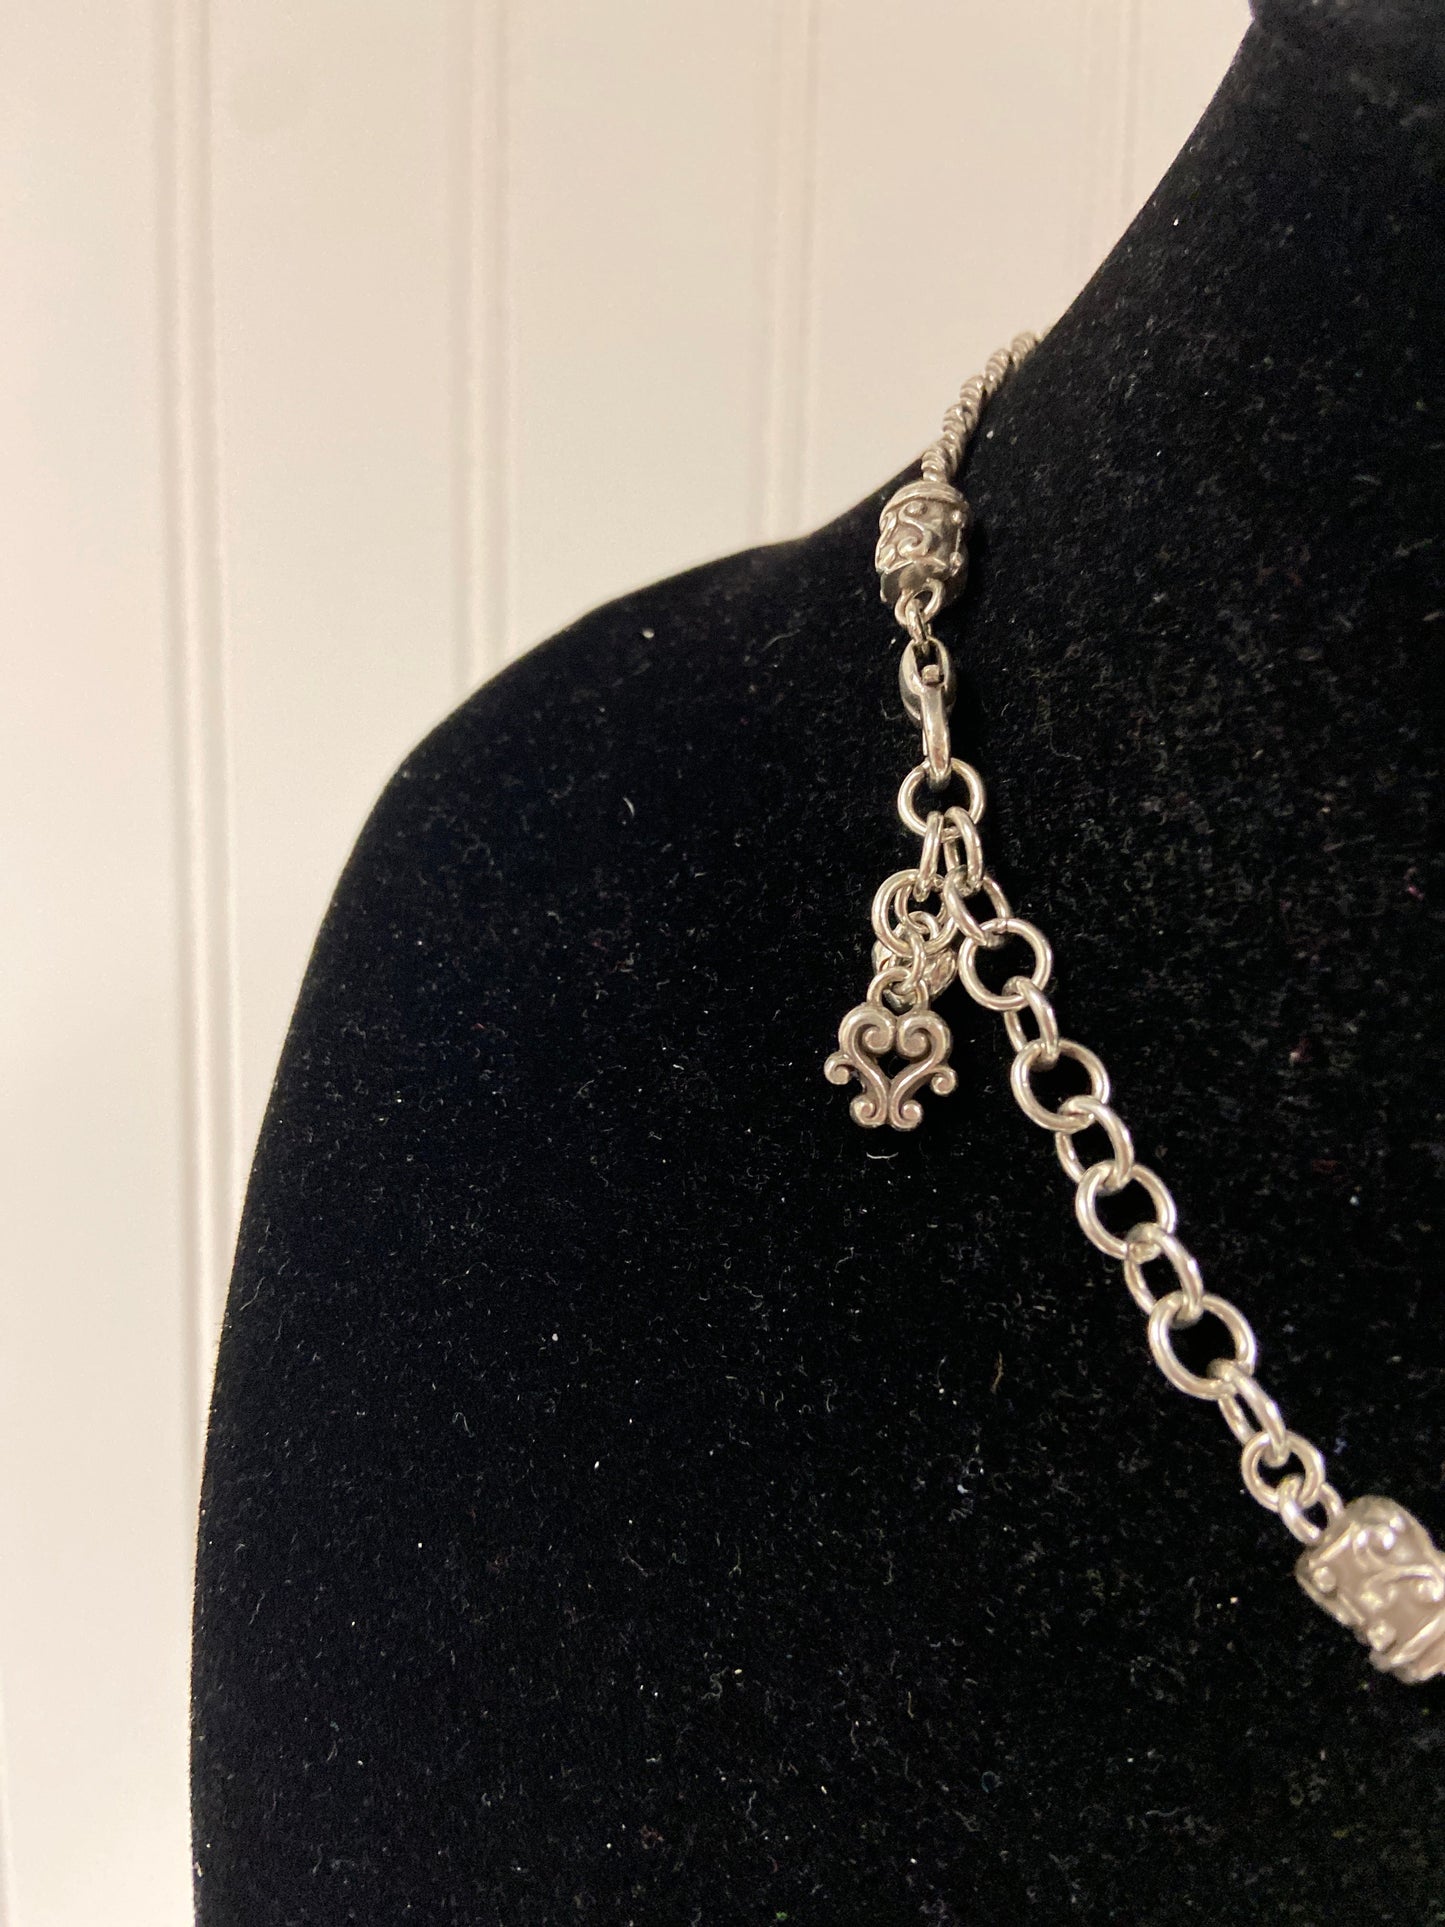 Silver Necklace Designer Brighton